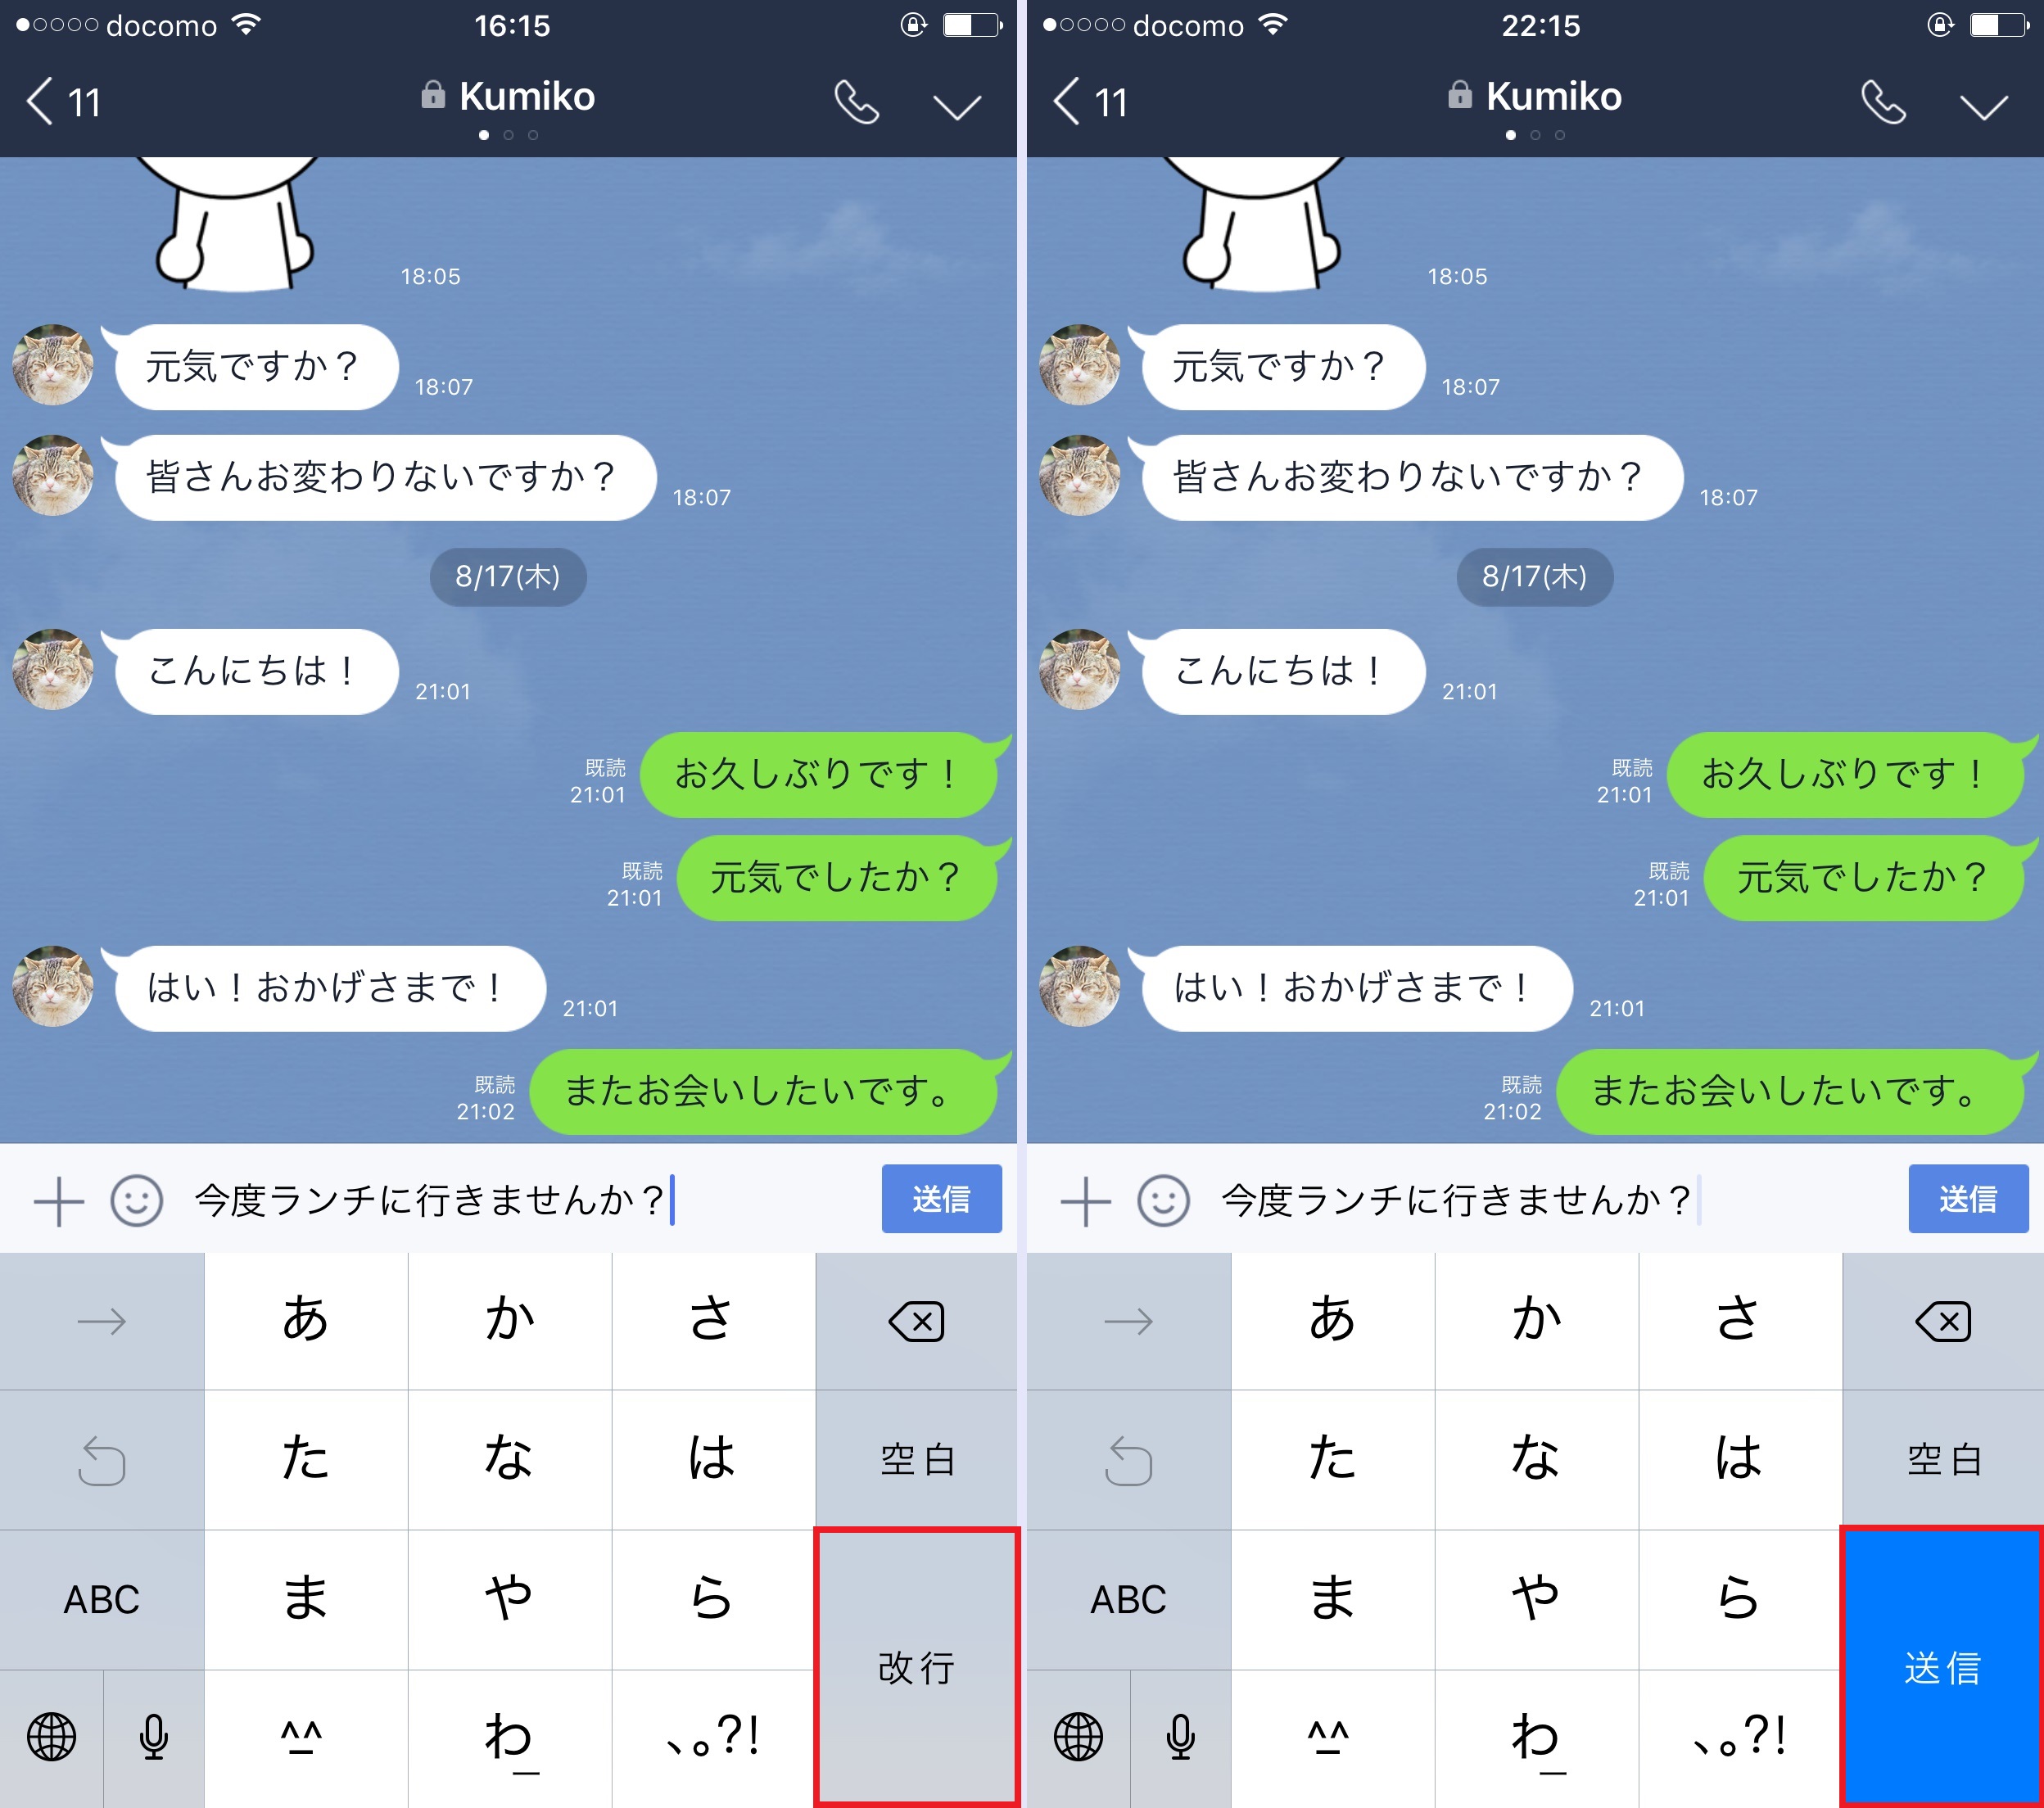 Lineでテンポよく会話するには キーボードから直接メッセージを送信するのがコツ Iphone Tips Engadget 日本版